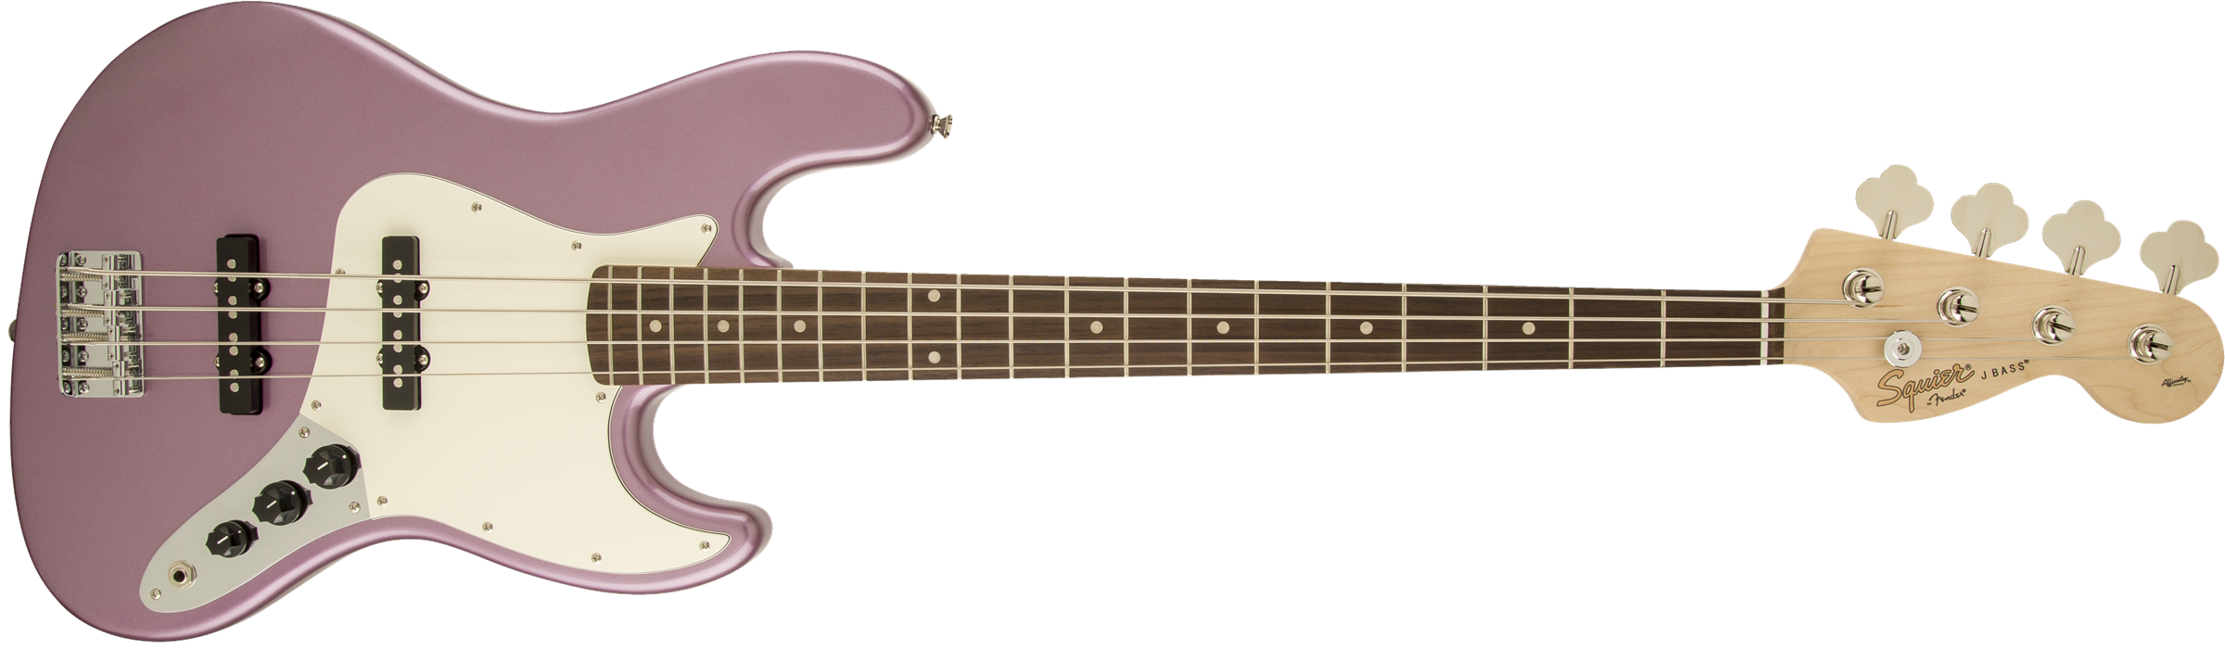 Fender Squier Affinity Jazz Bas (Burgundy Mist Metallic)